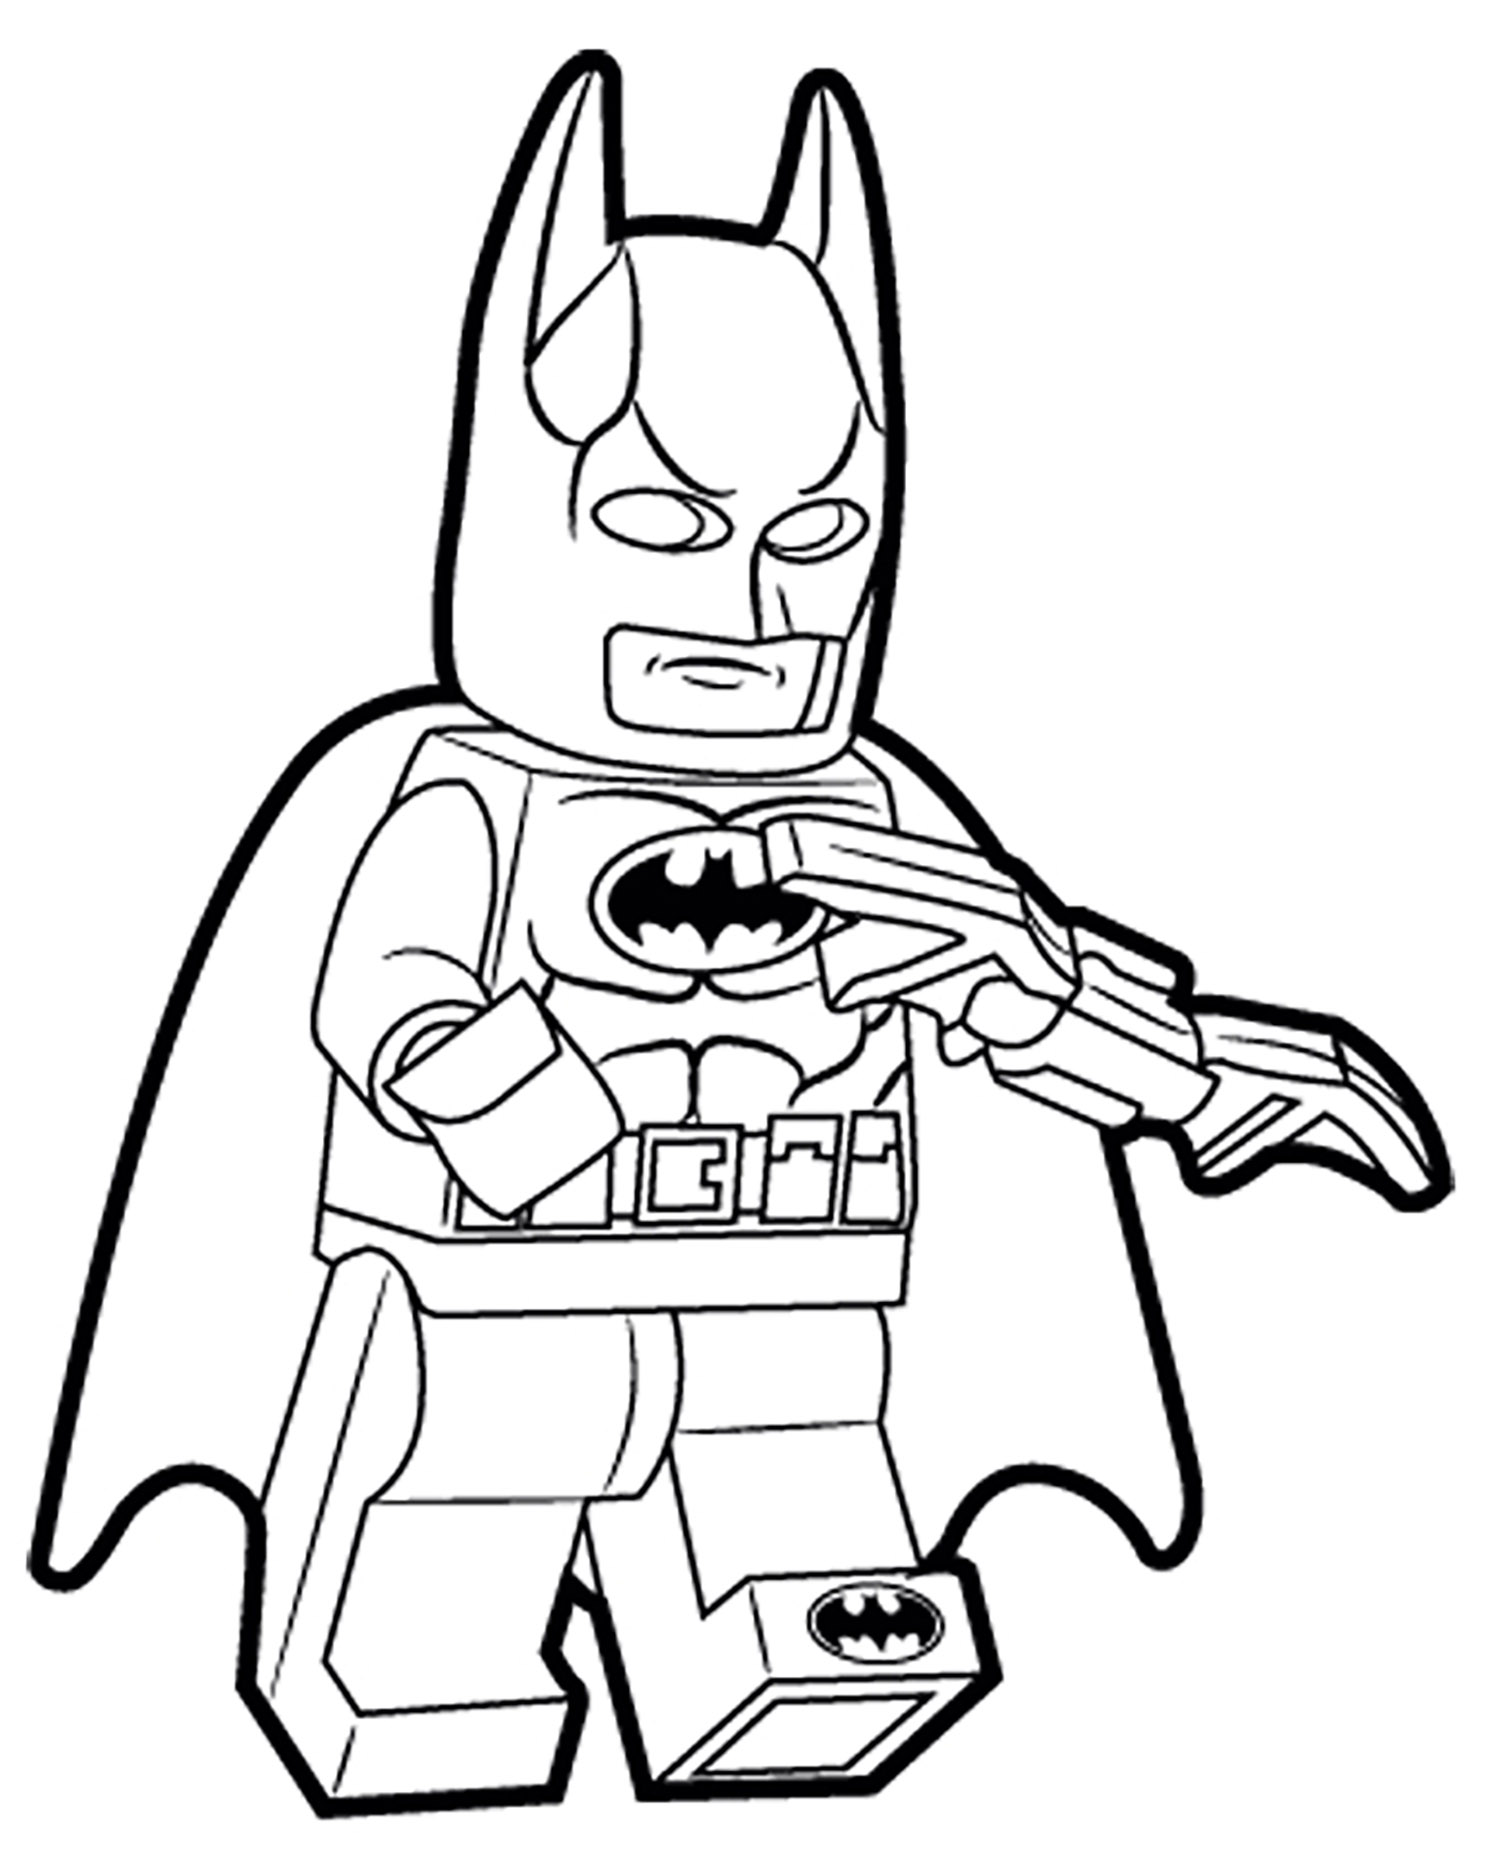 La versión Lego de Batman mola.